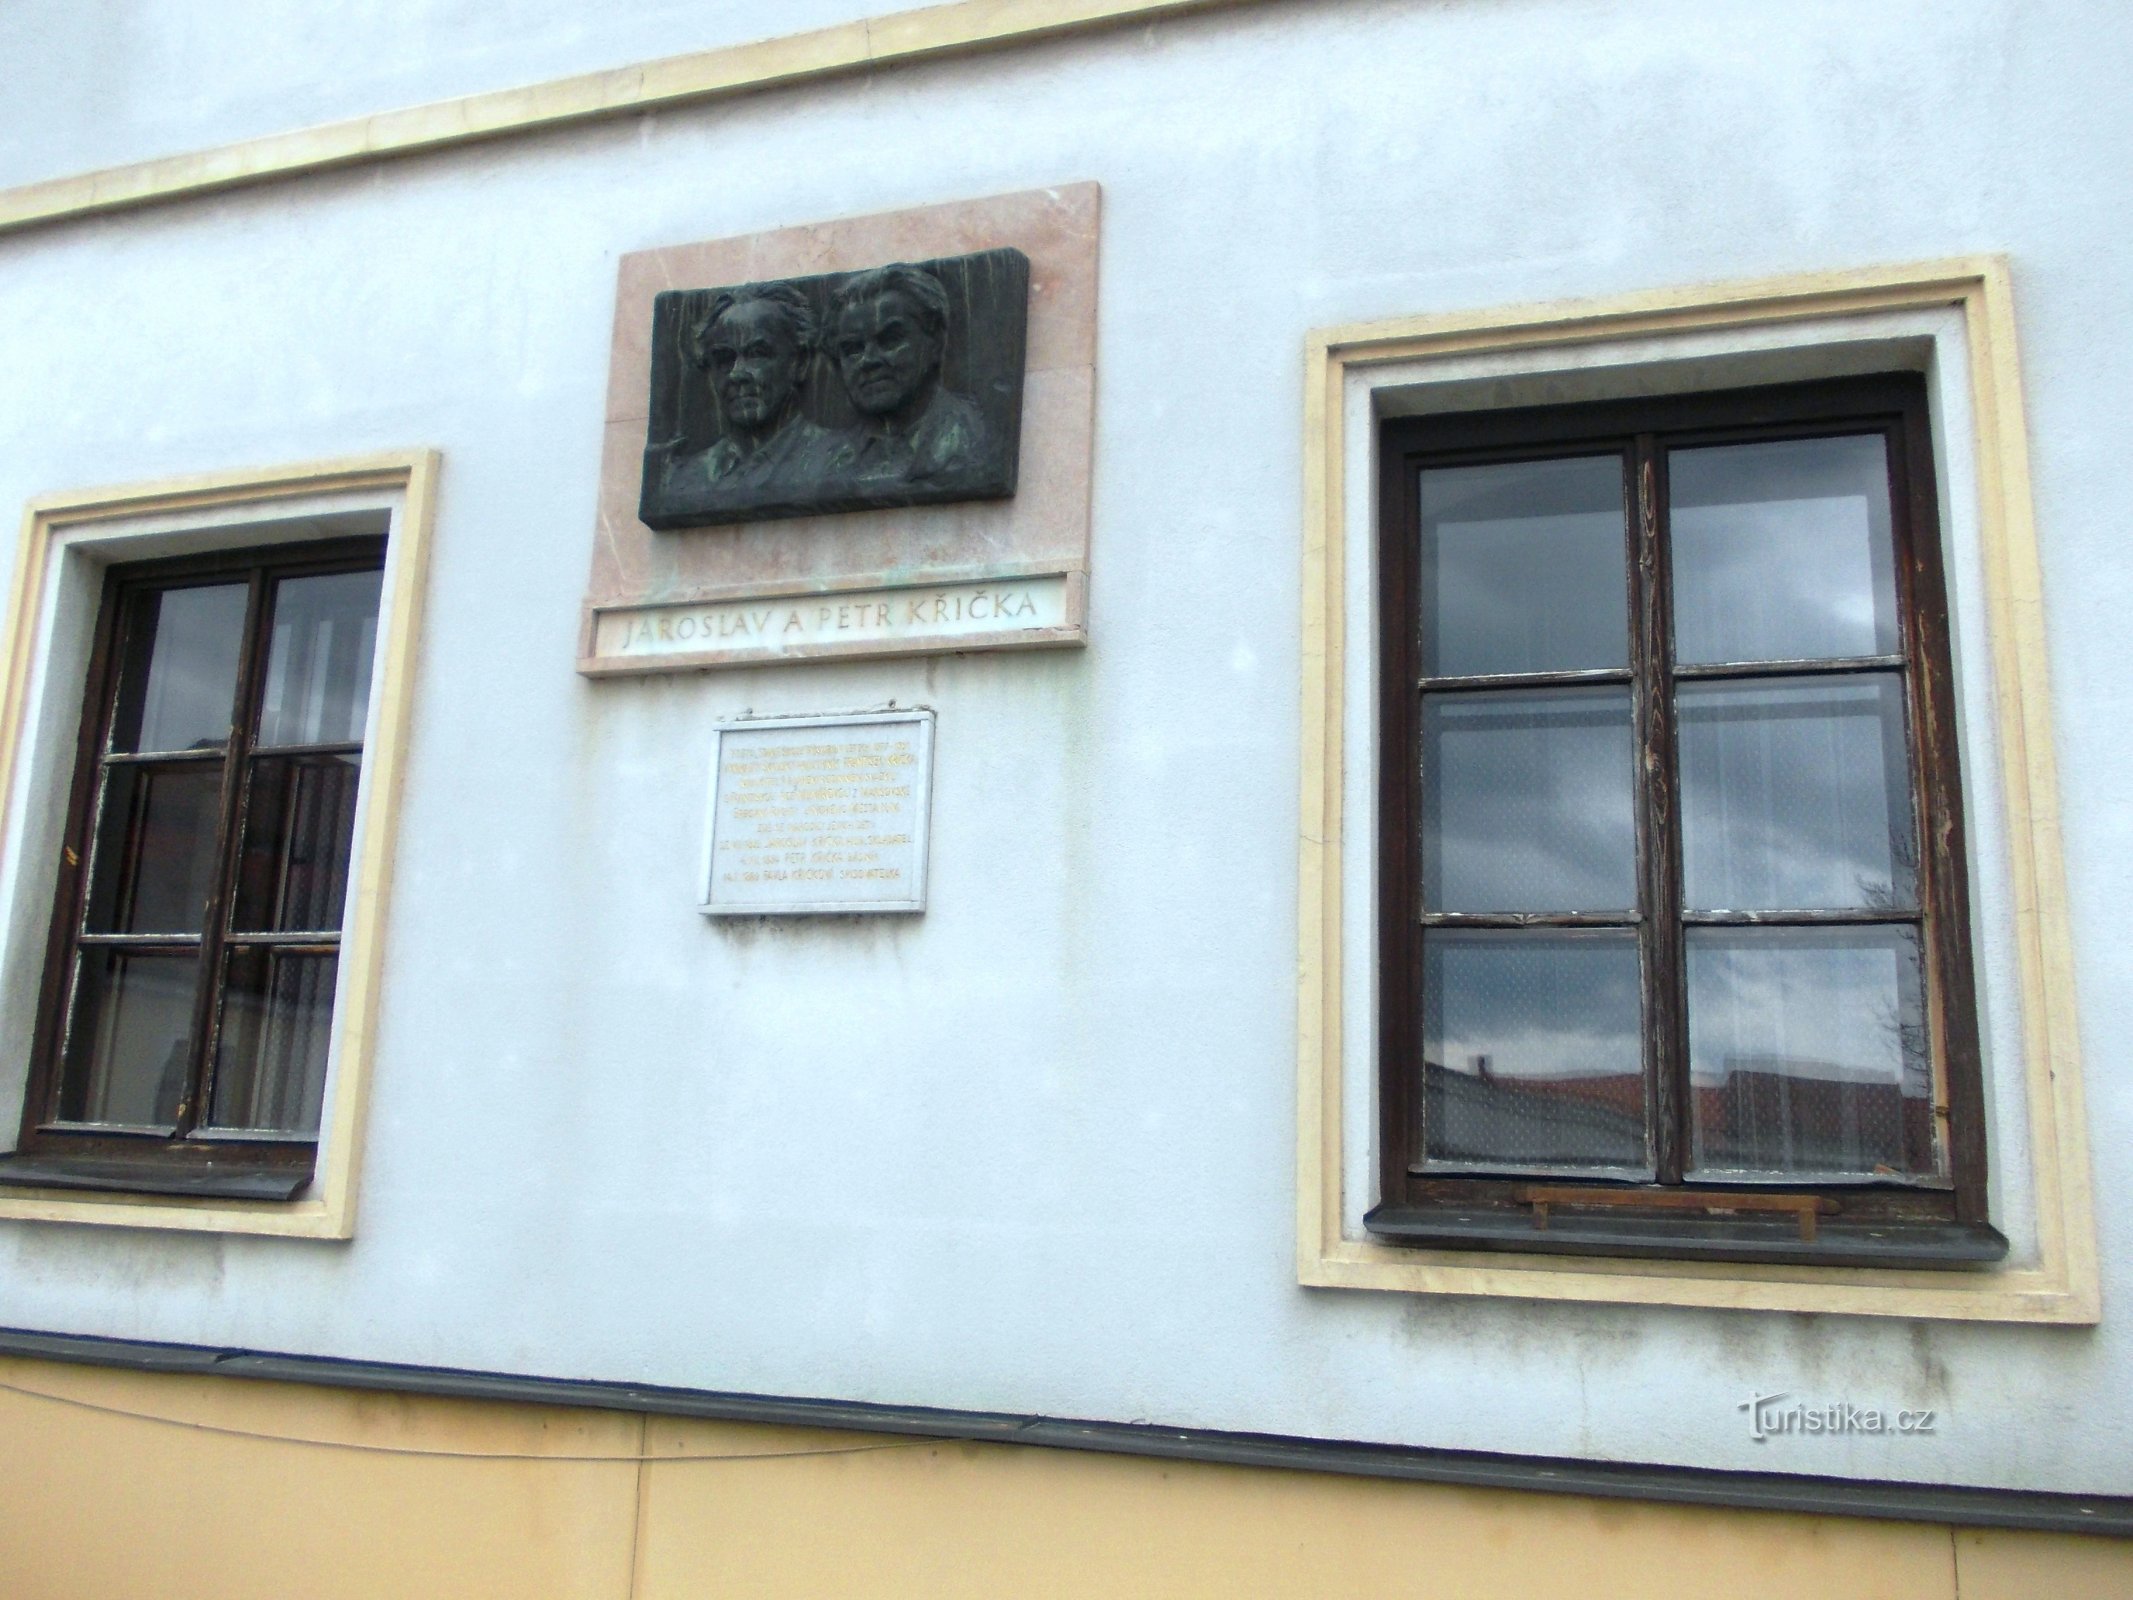 due targhe commemorative sul vecchio edificio scolastico